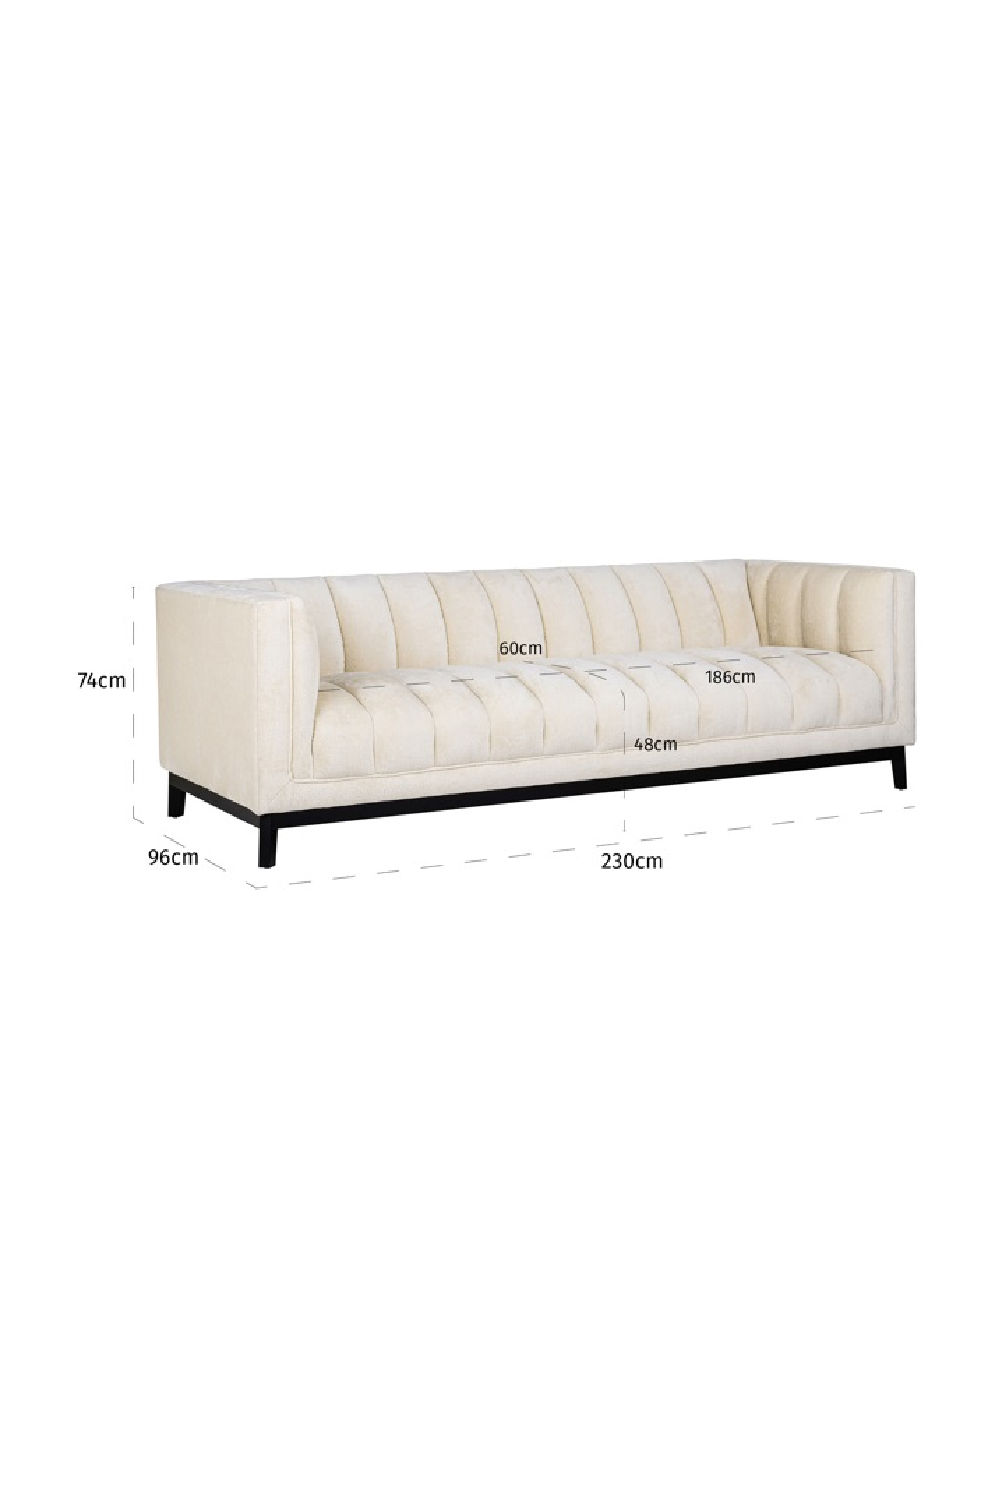 White Chenille Tufted Sofa | OROA Beaudy | Oroa.com